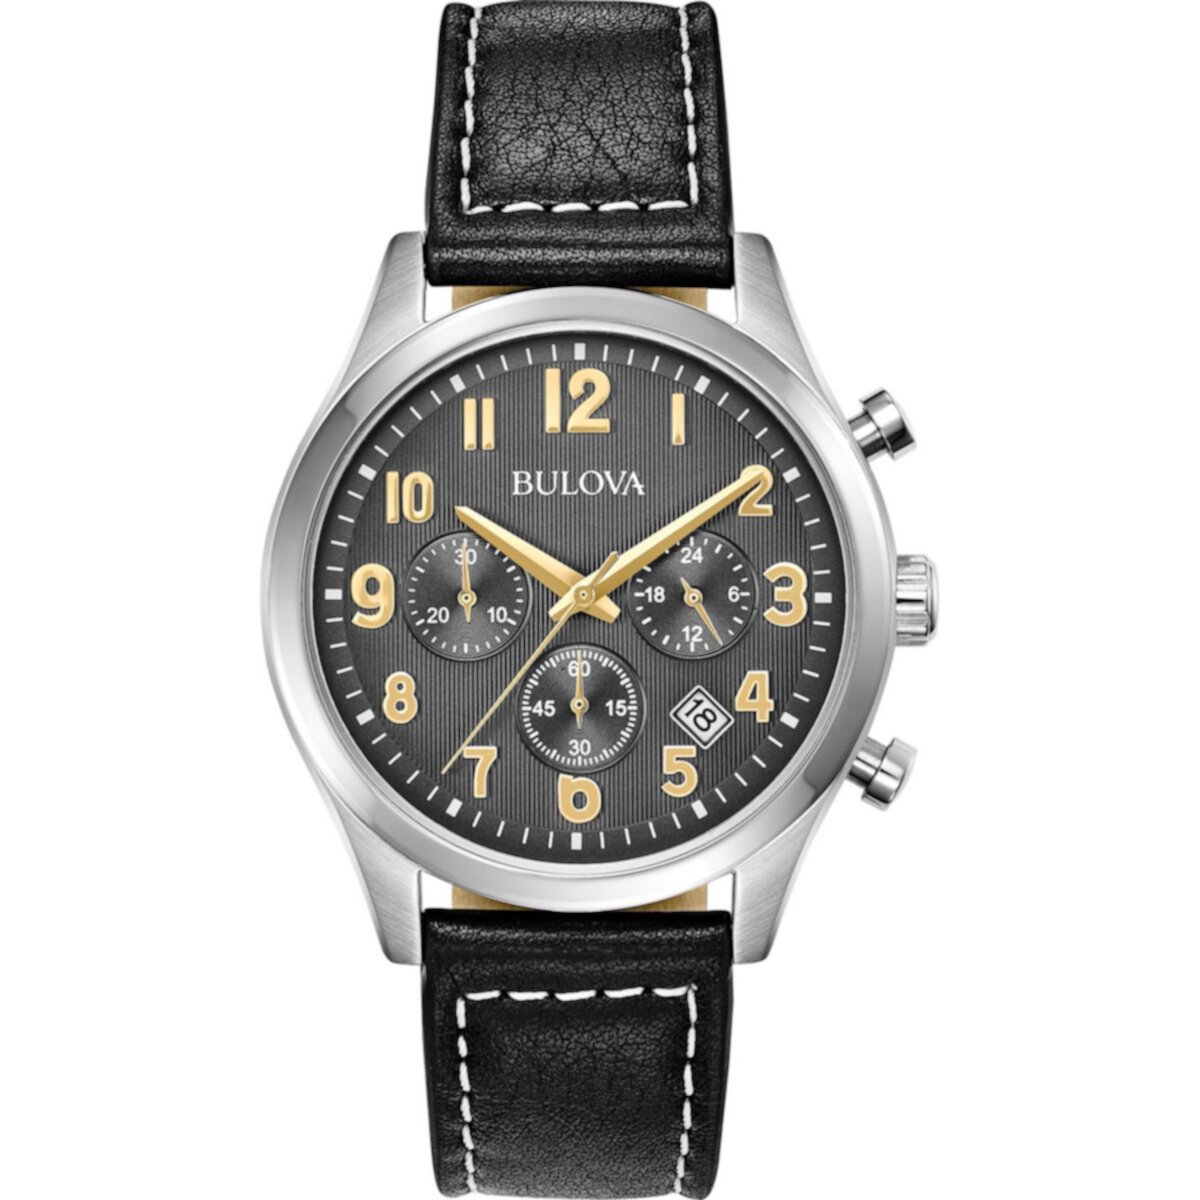 Мужские классические кожаные часы Bulova с хронографом — 96B302 Bulova